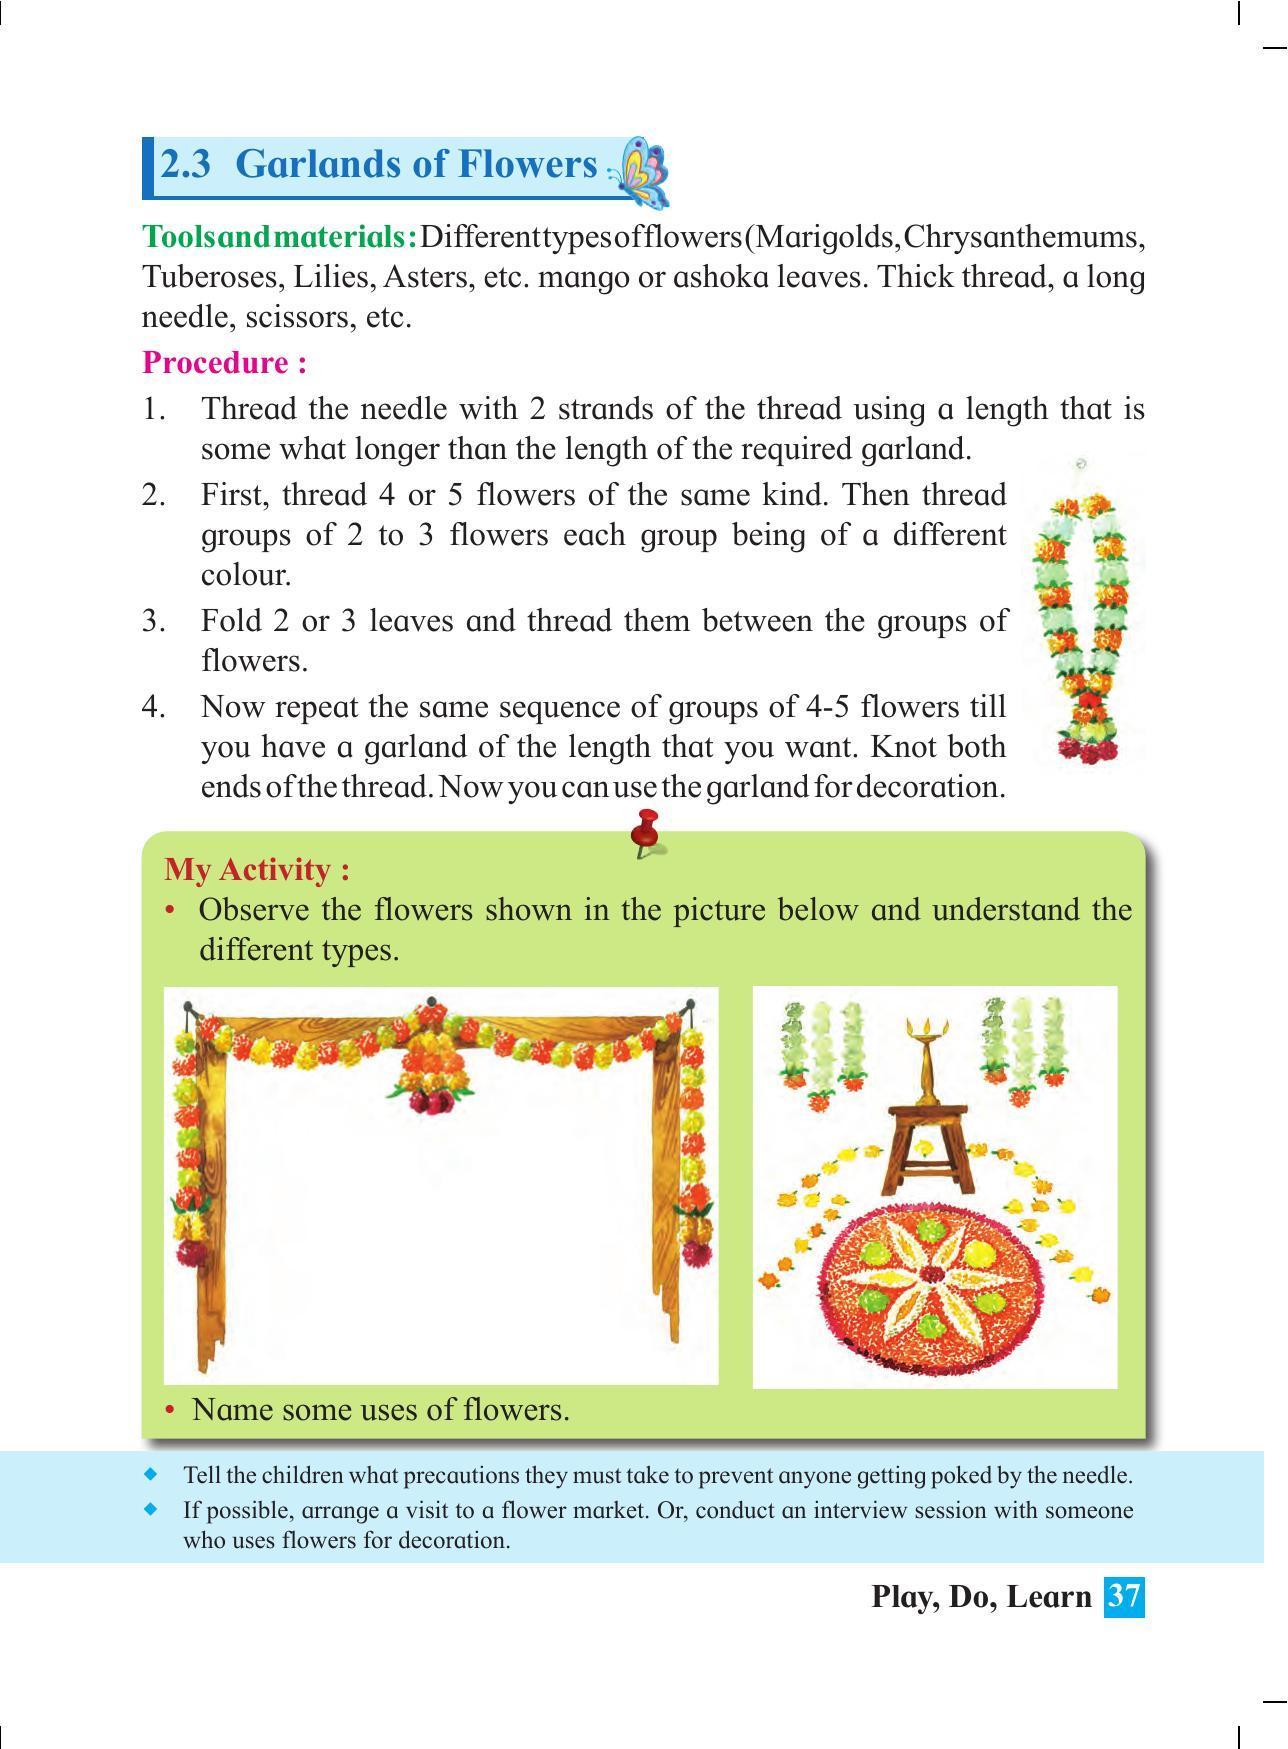 Maharashtra Board Class 4 Play Do Learn (English Medium) Textbook - Page 46